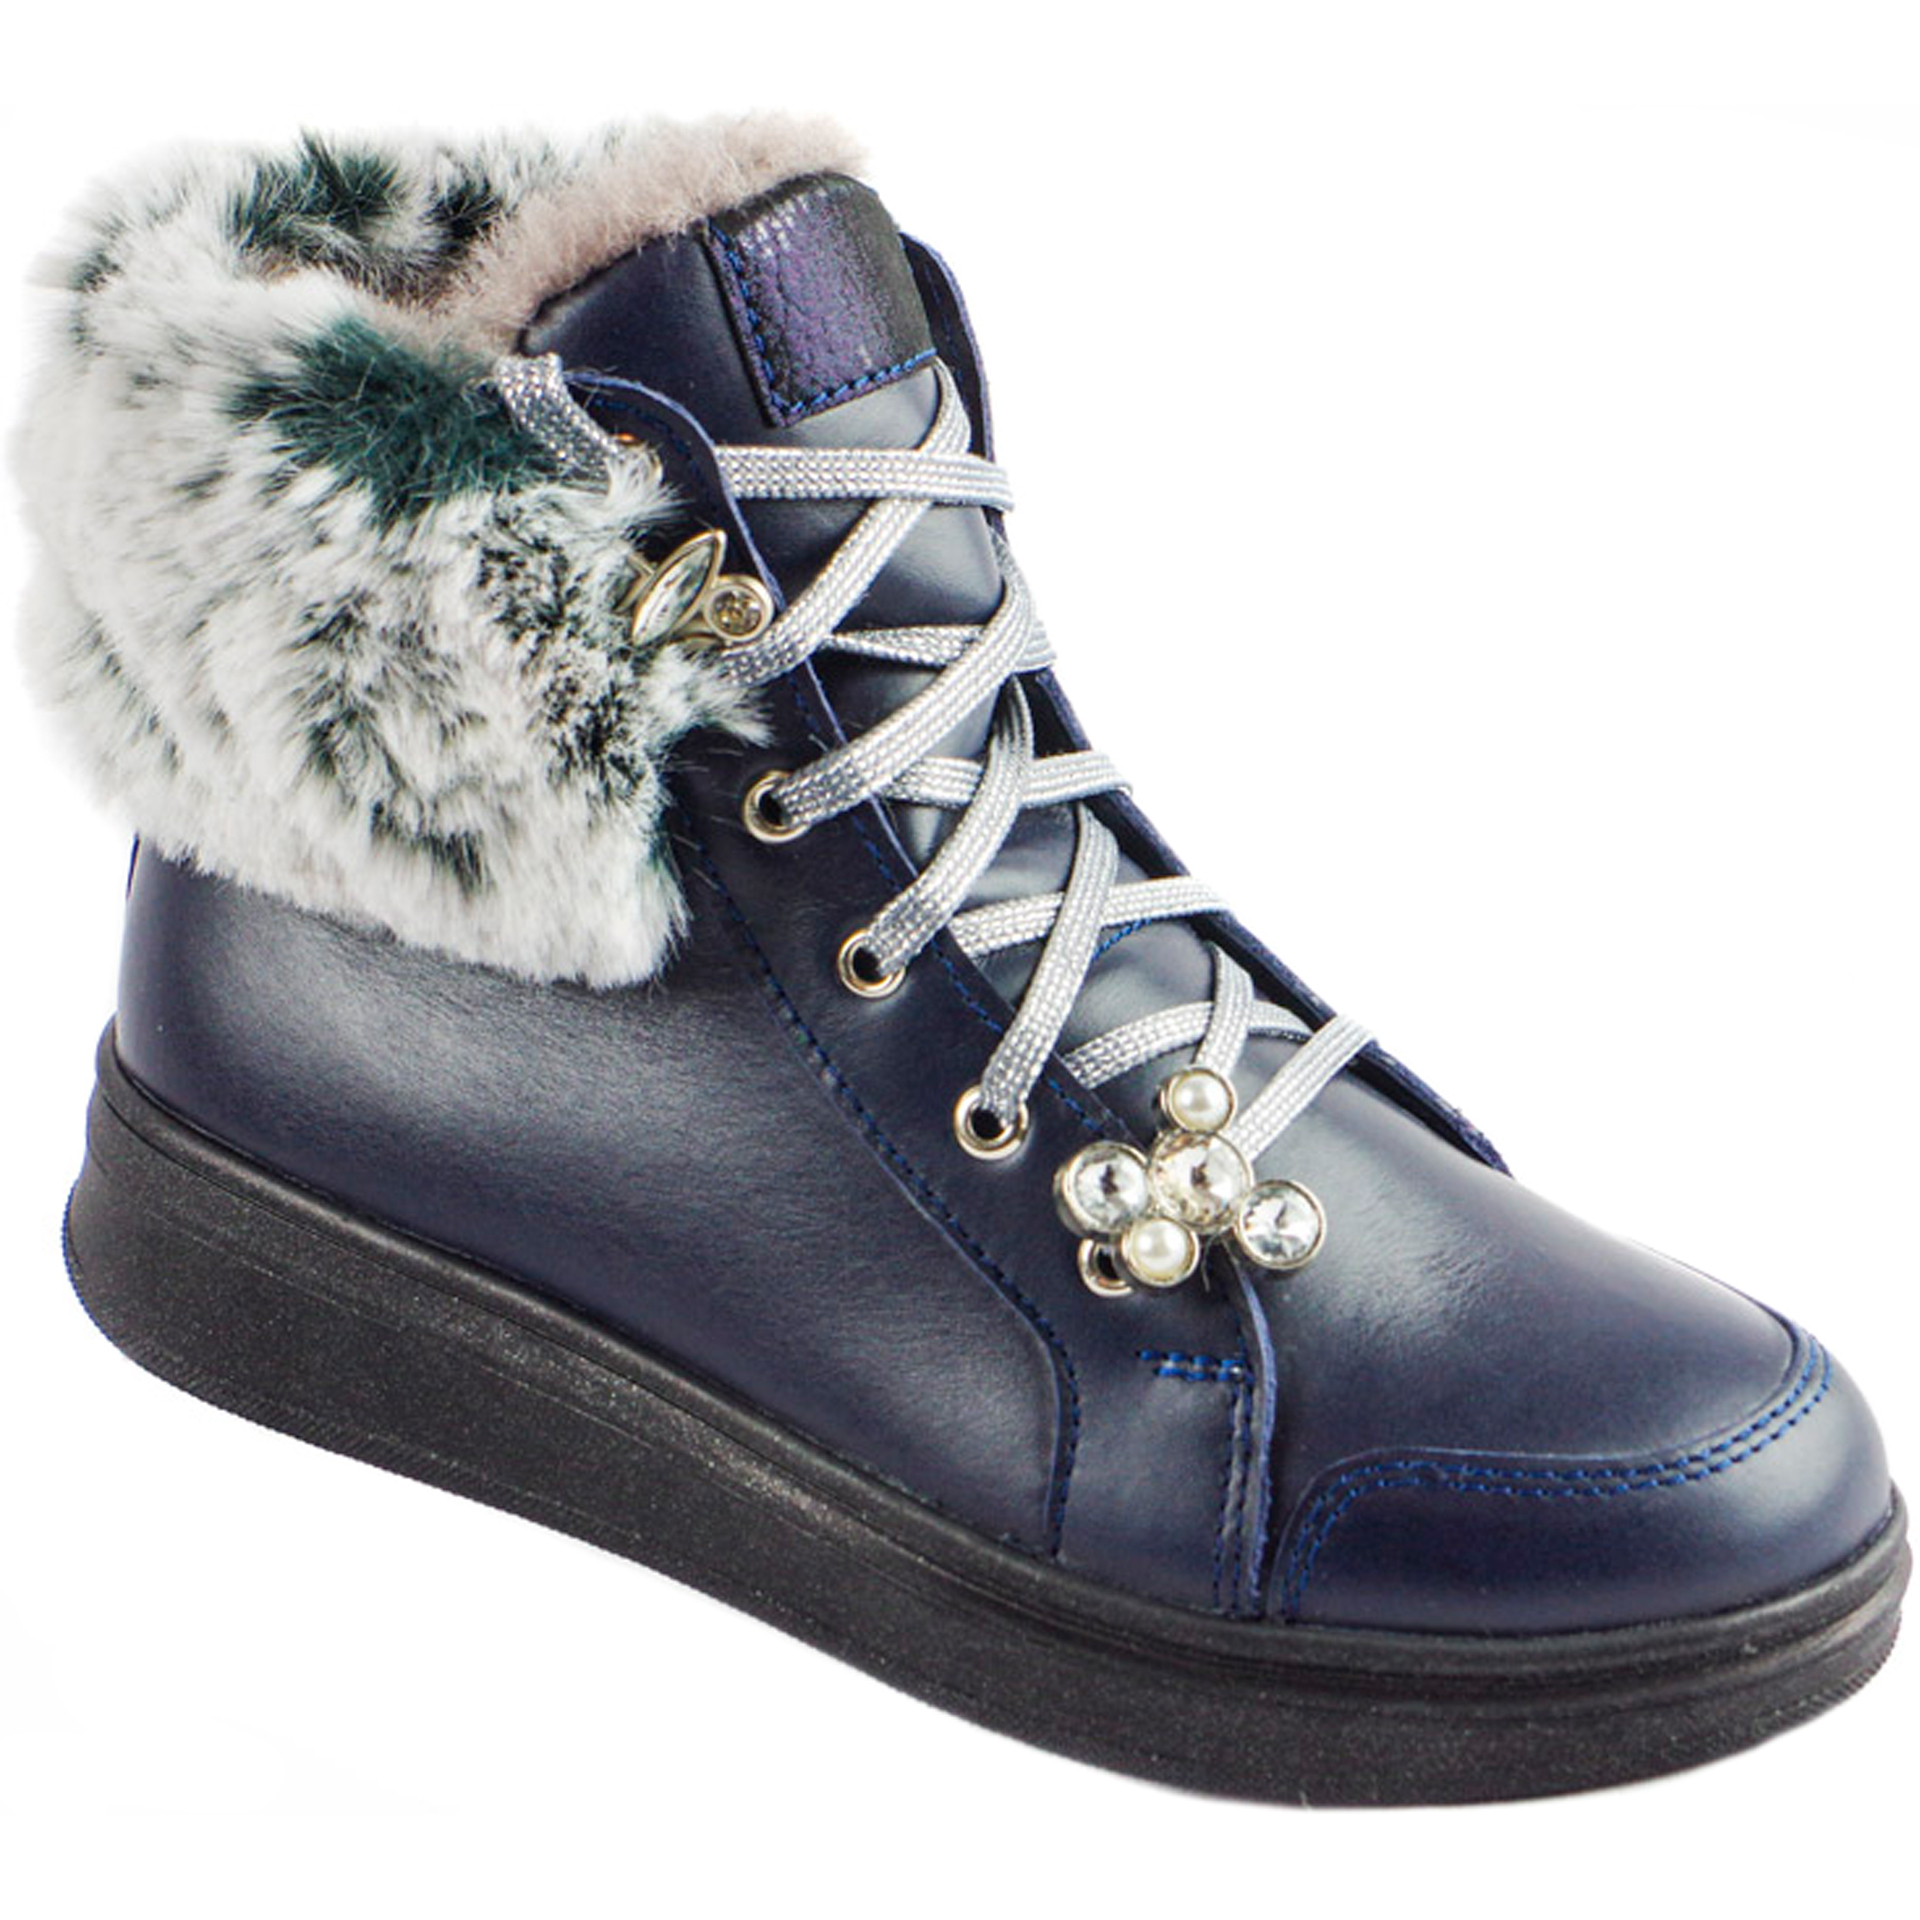 Зимние ботинки (1741) - обувь для девочек в магазине Соул Кидс